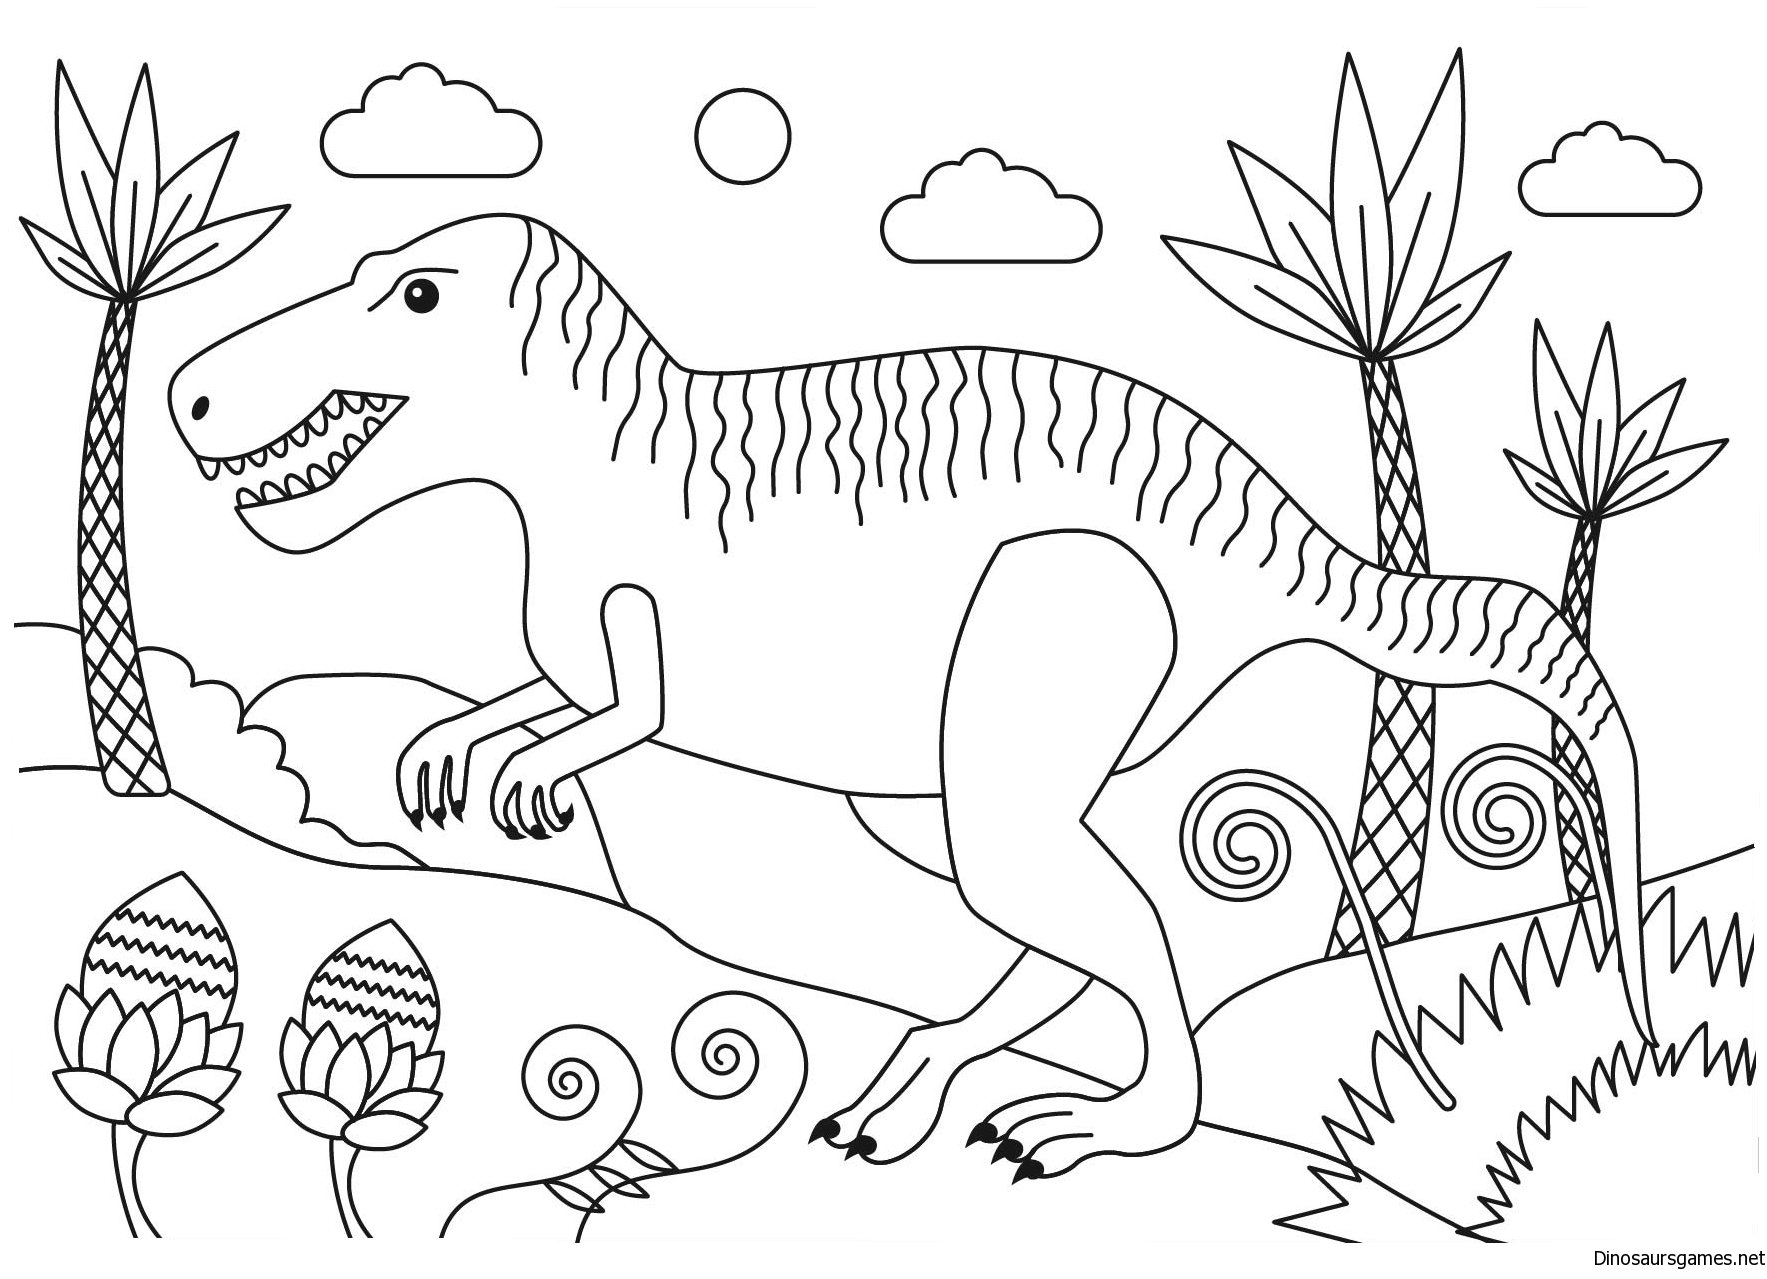 Динозавры для раскрашивания. Динозавры / раскраска. Динозавр раскраска для детей. Динозаврики раскраска для детей. Динозавры для раскрашивания детям.